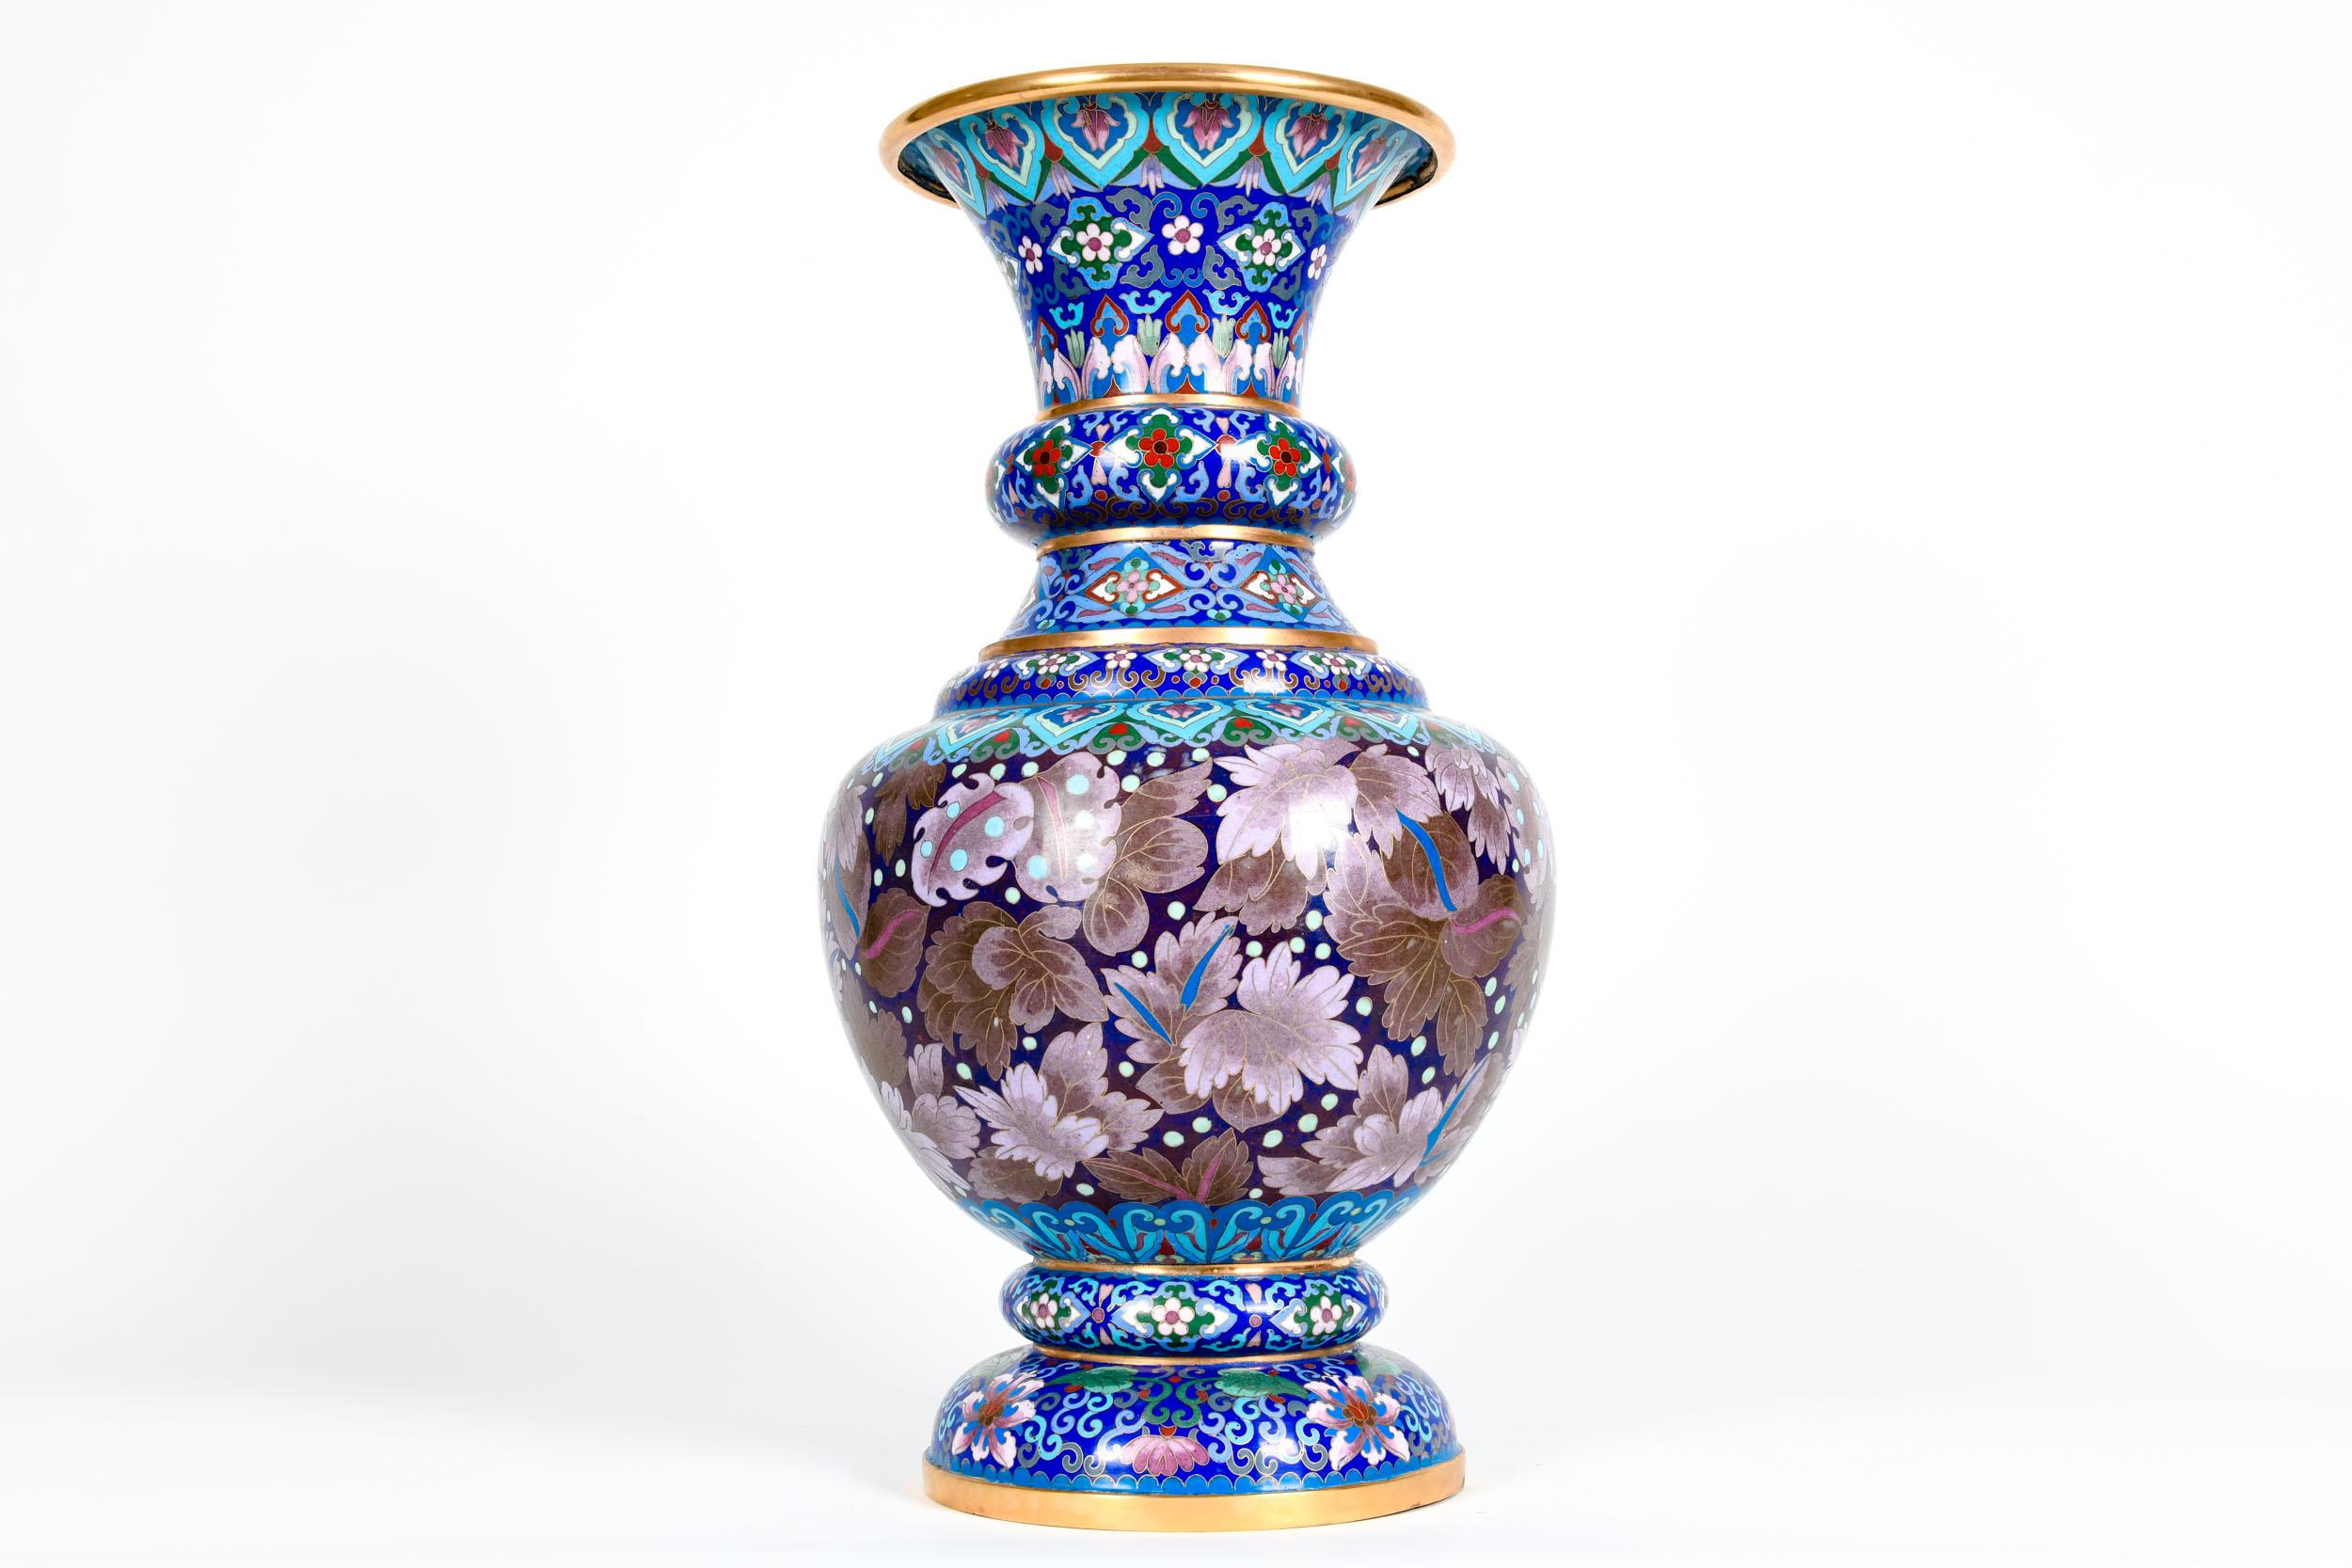 Vintage Gilt Brass Interior Cloisonné Decorative Vase / Piece 6